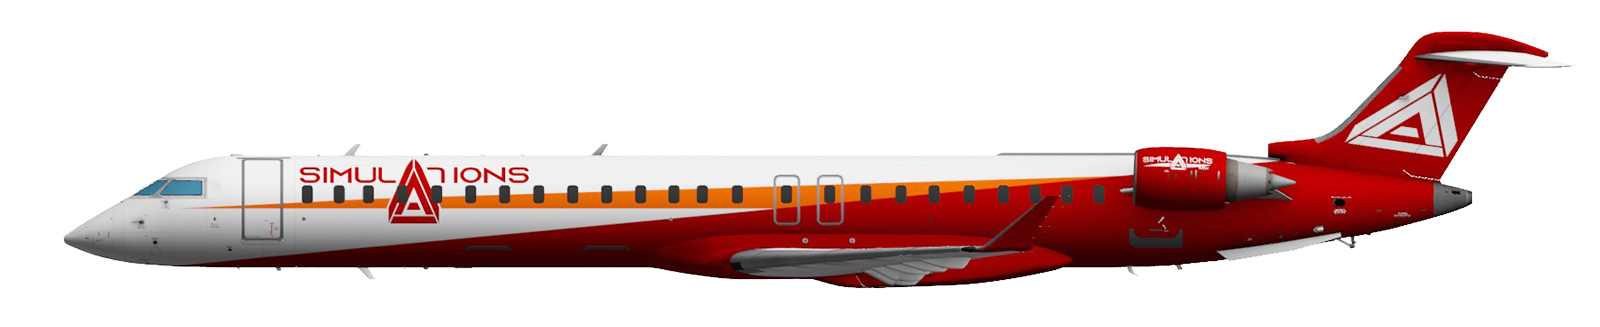 CRJ-900